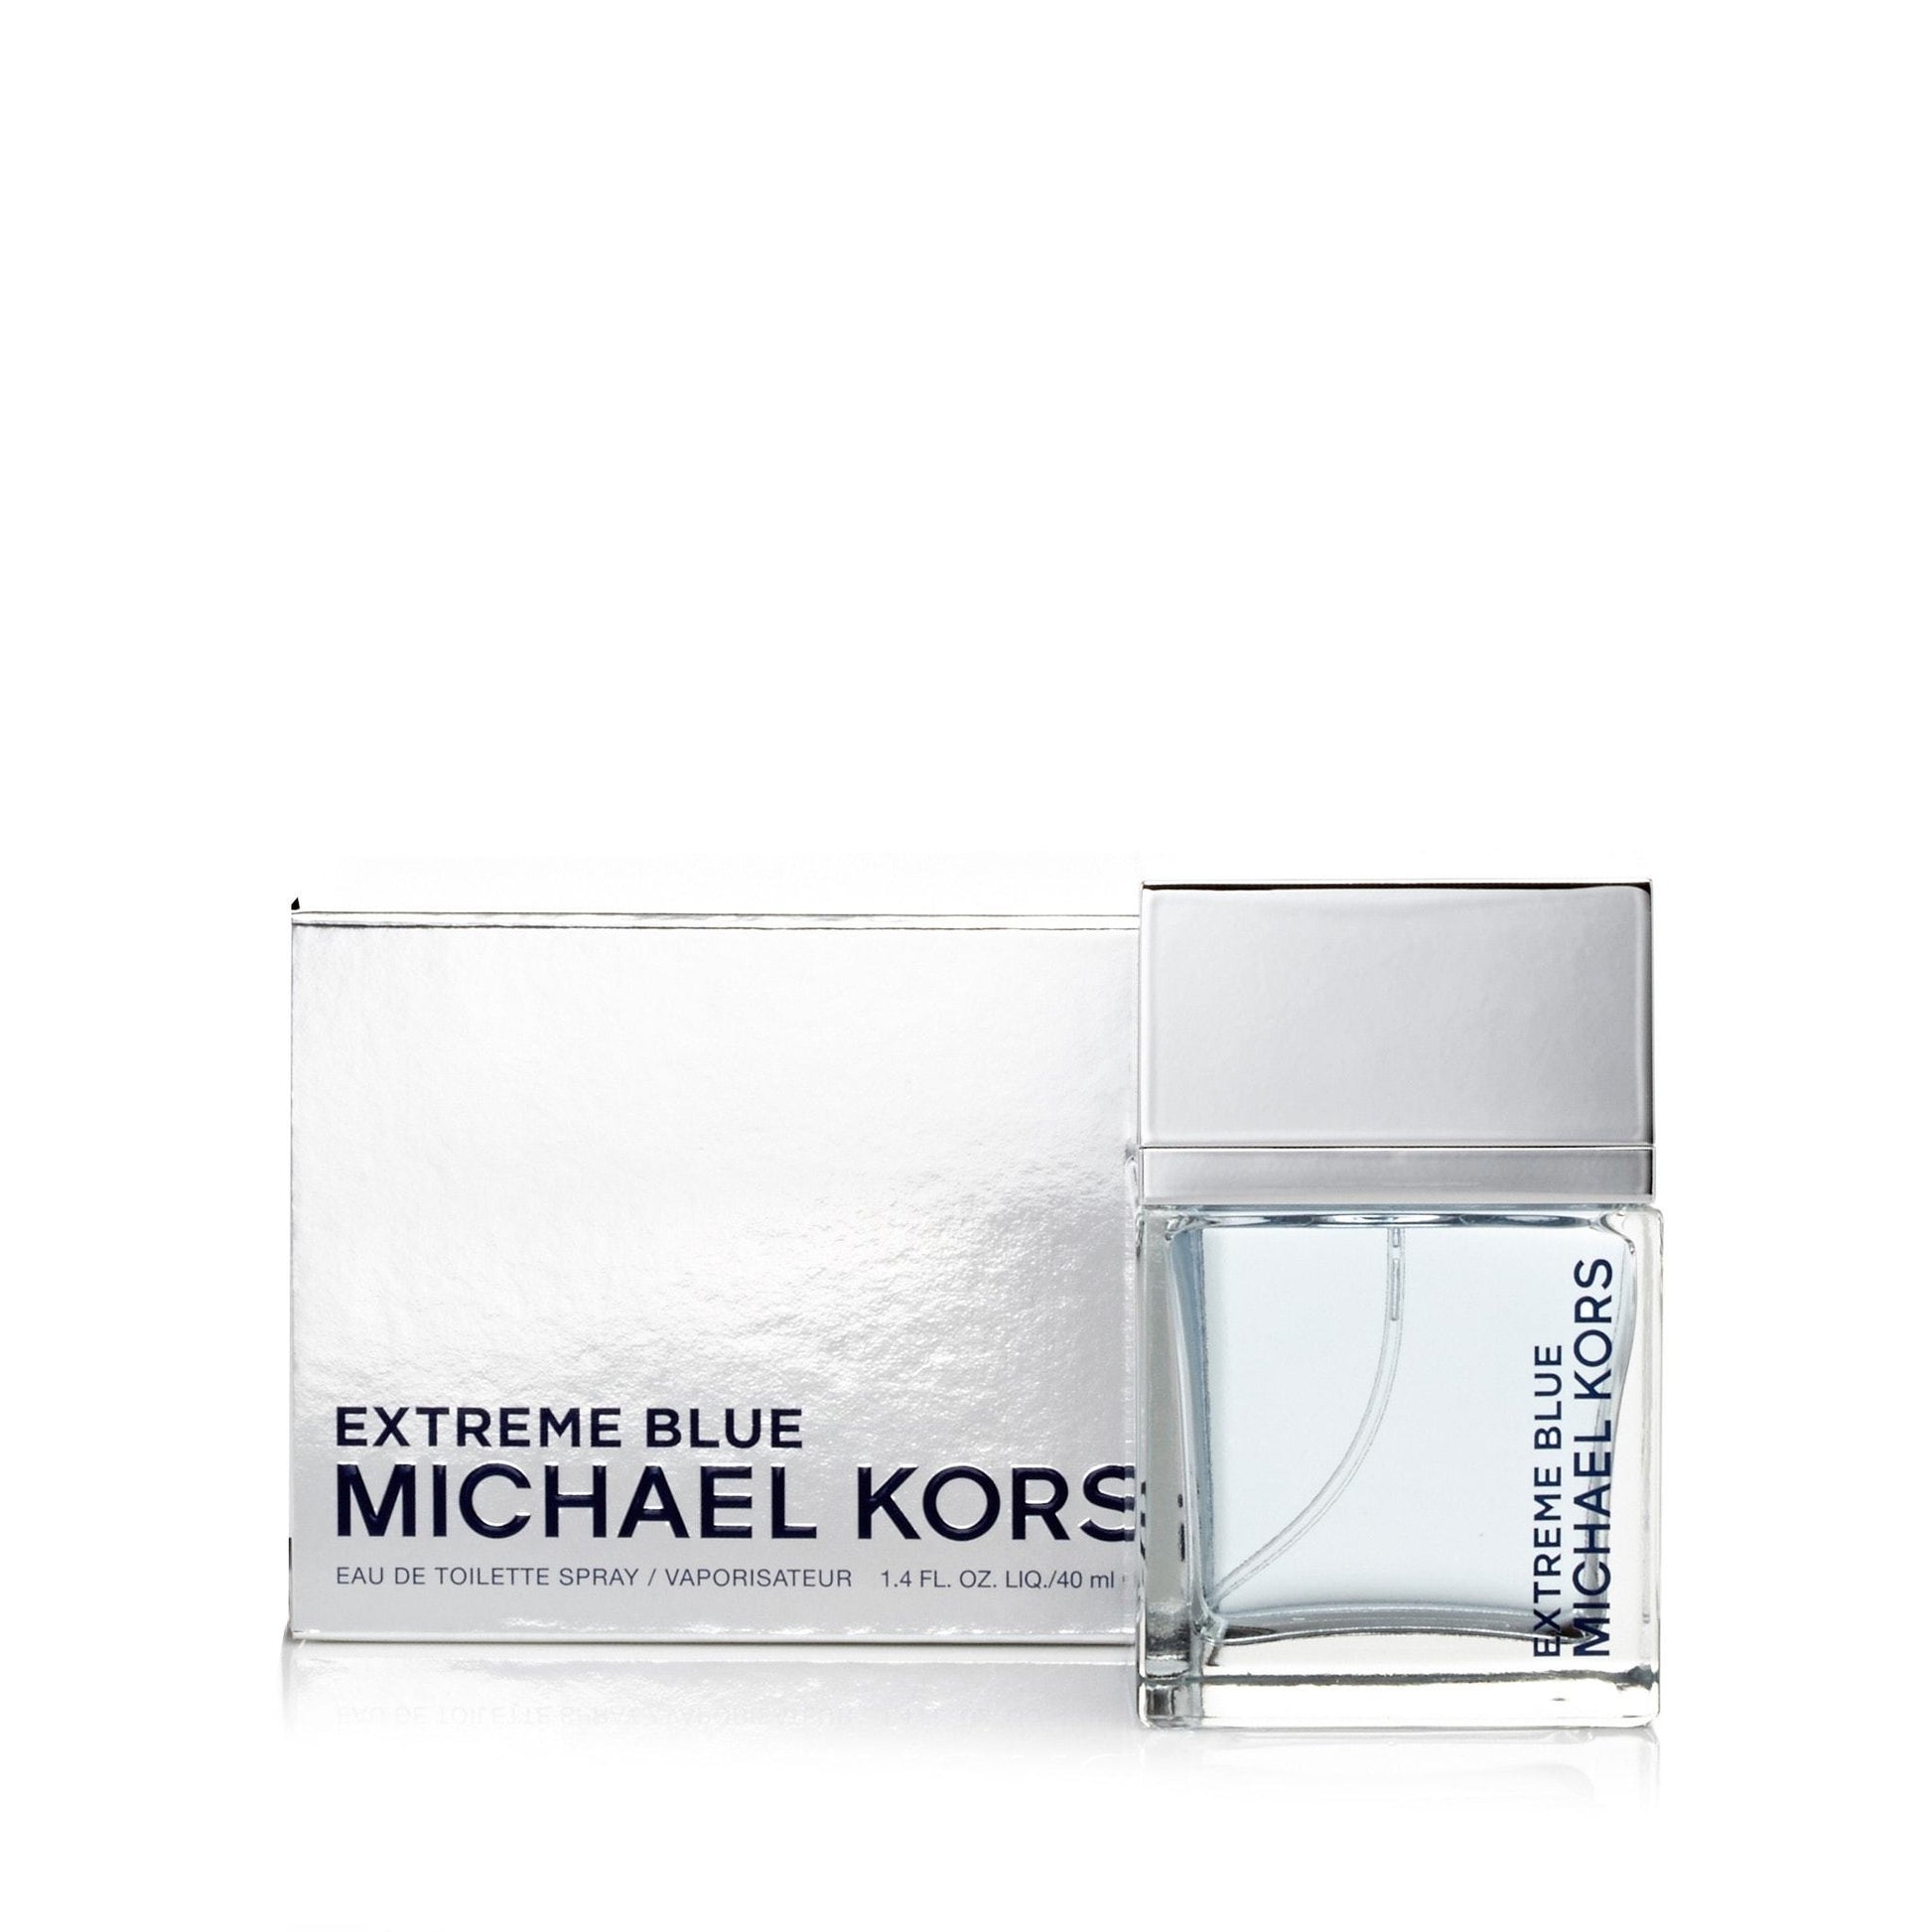 Extreme Blue Eau de Toilette Spray for Men by Michael Kors, Product image 4